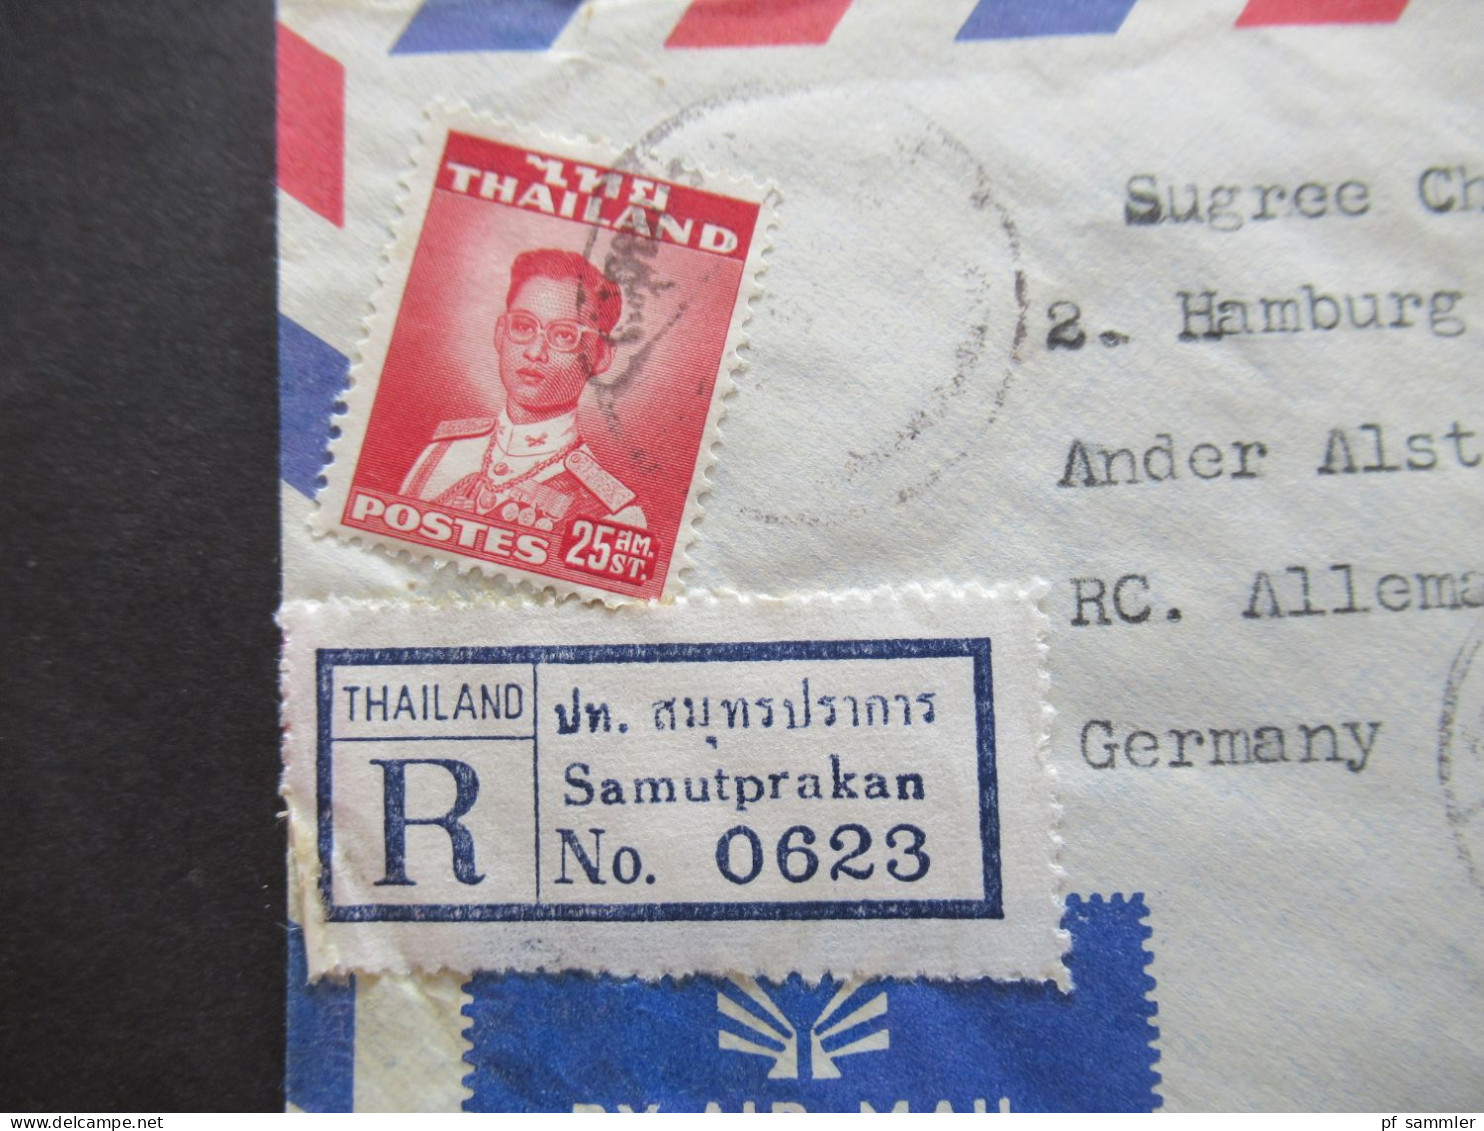 Asien Thailand 1965 Einschreiben / Registered Letter Luftpost / Air Mail Samutprakan - Hamburg - Tailandia